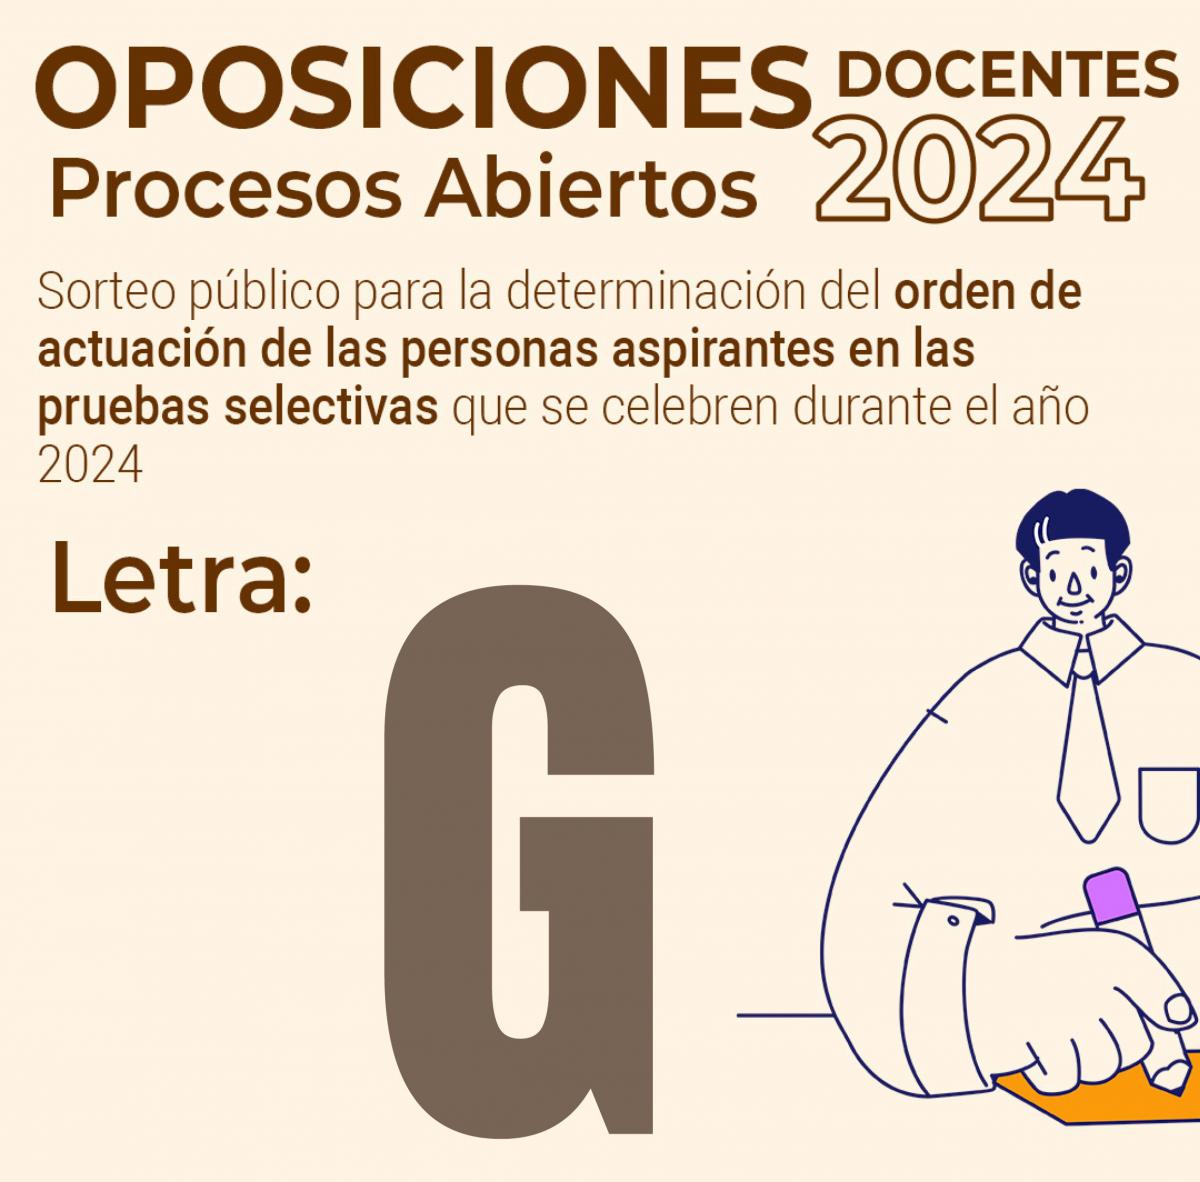 Letra para los procesos abiertos de oposiciones docentes en 2024